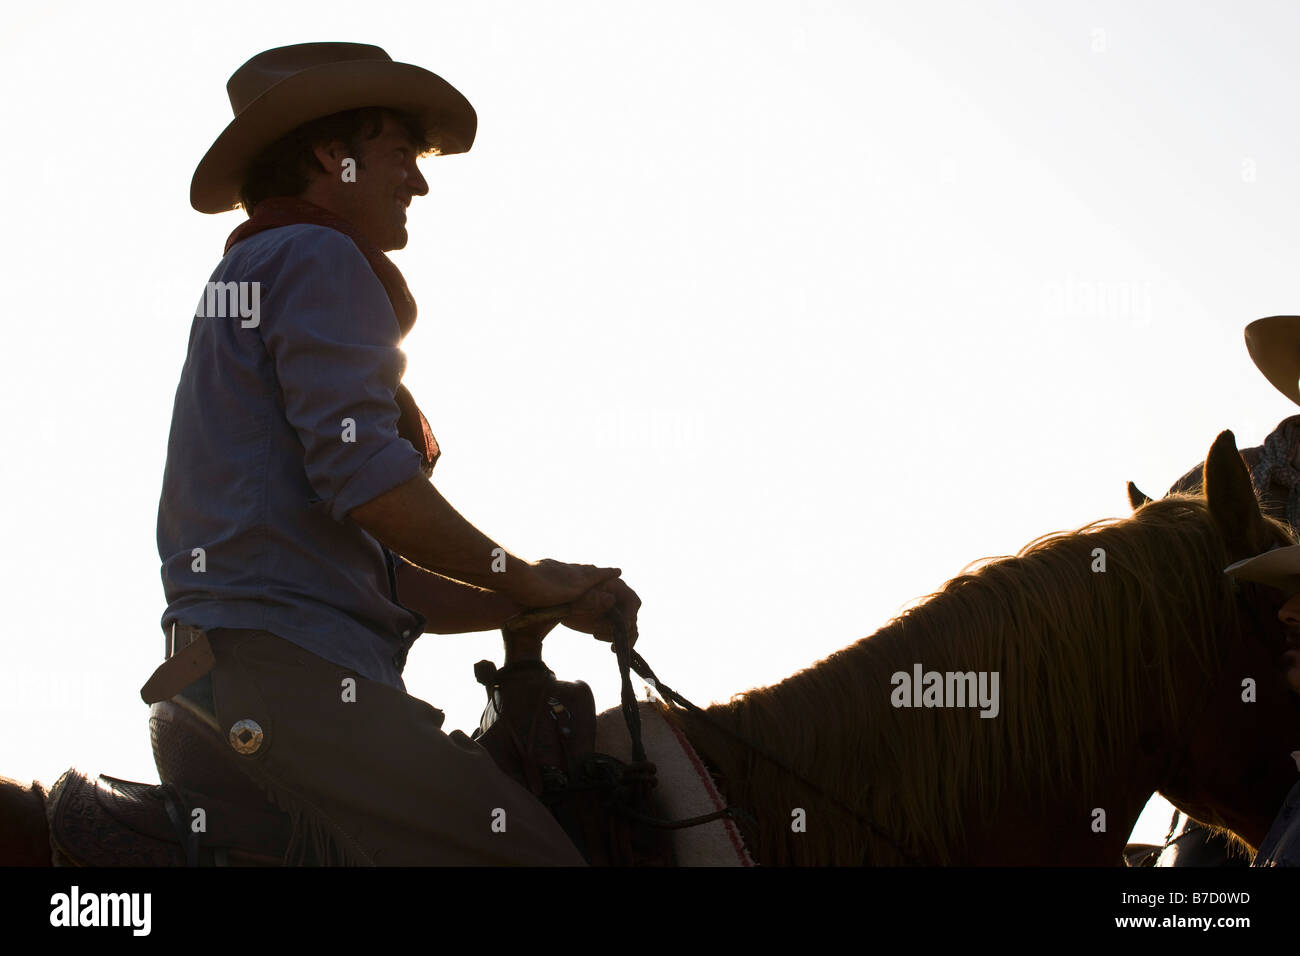 A cowboy riding a horse Stock Photo